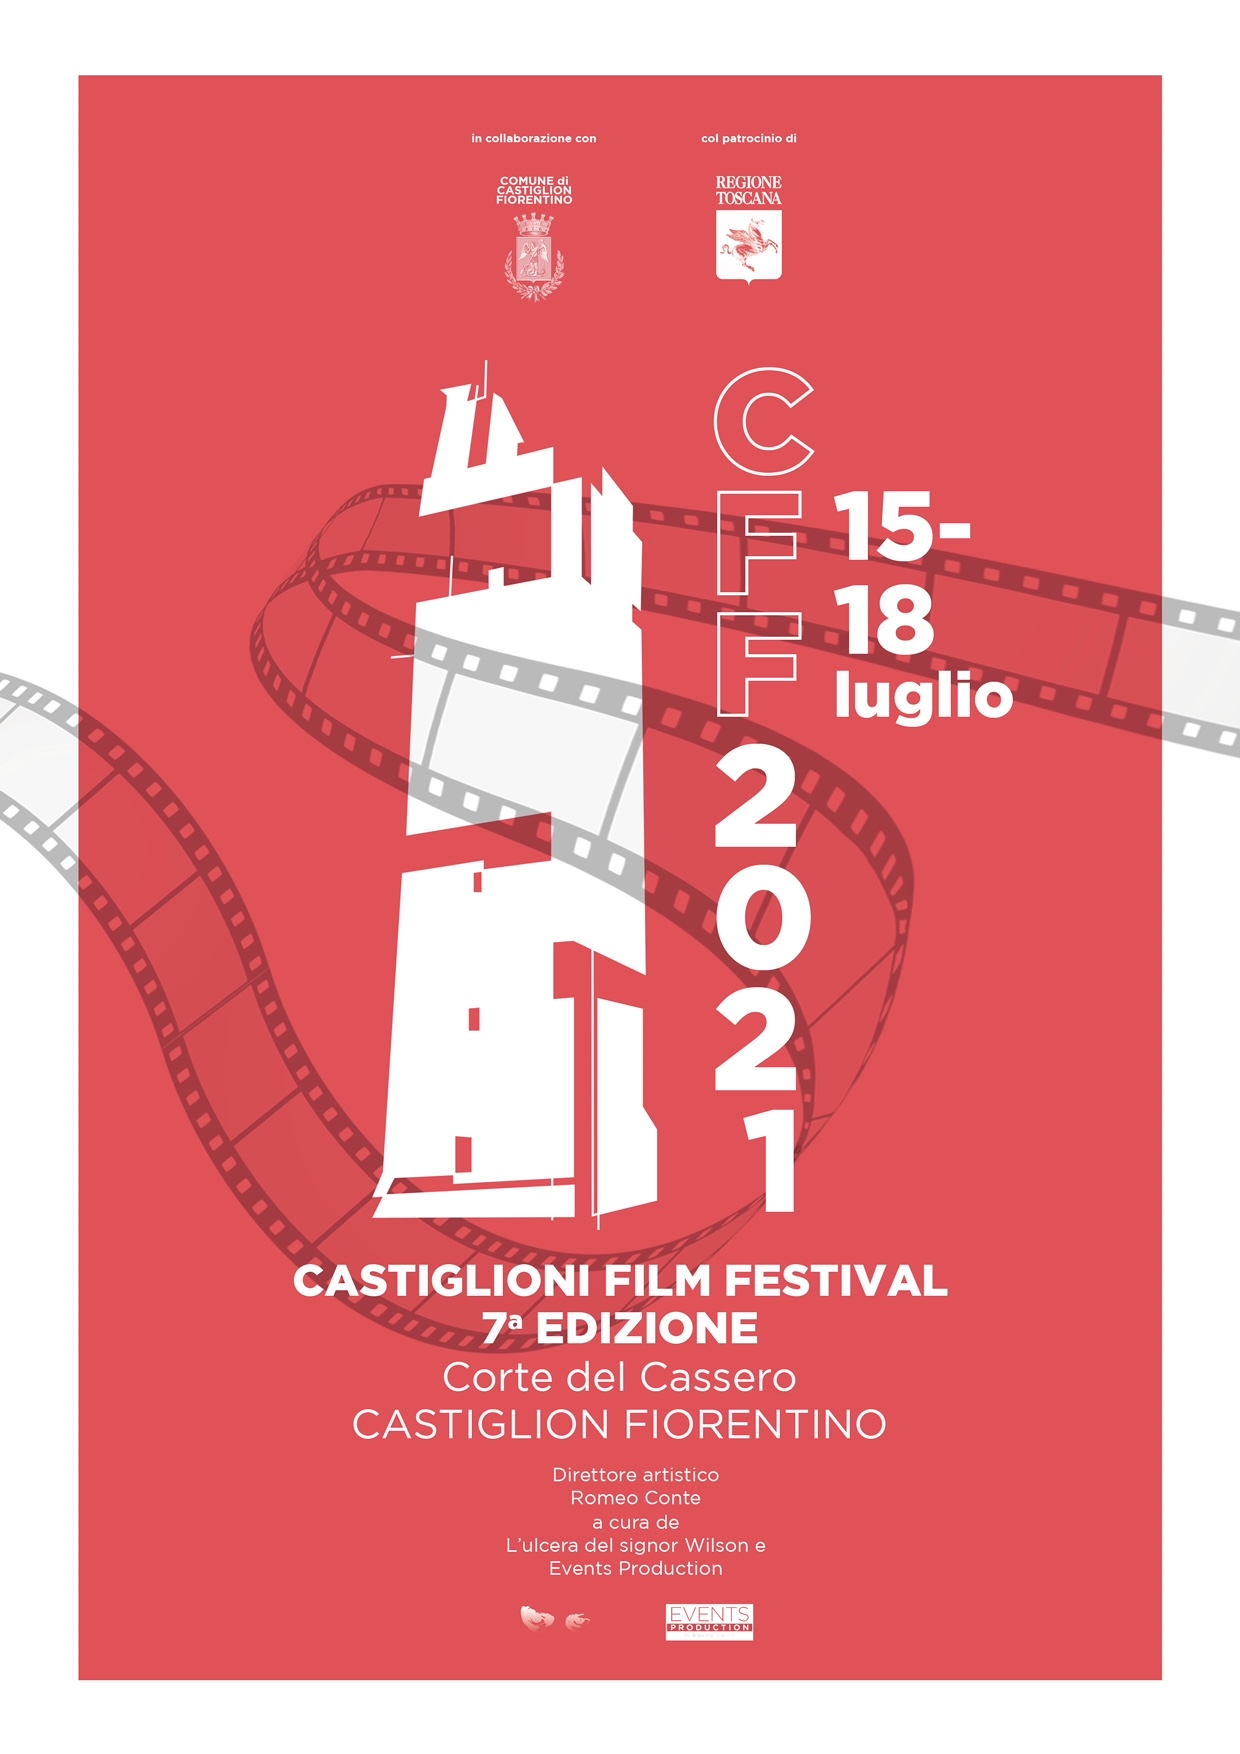 Il Castiglioni Film Festival chiude in bellezza e dà appuntamento al 2022